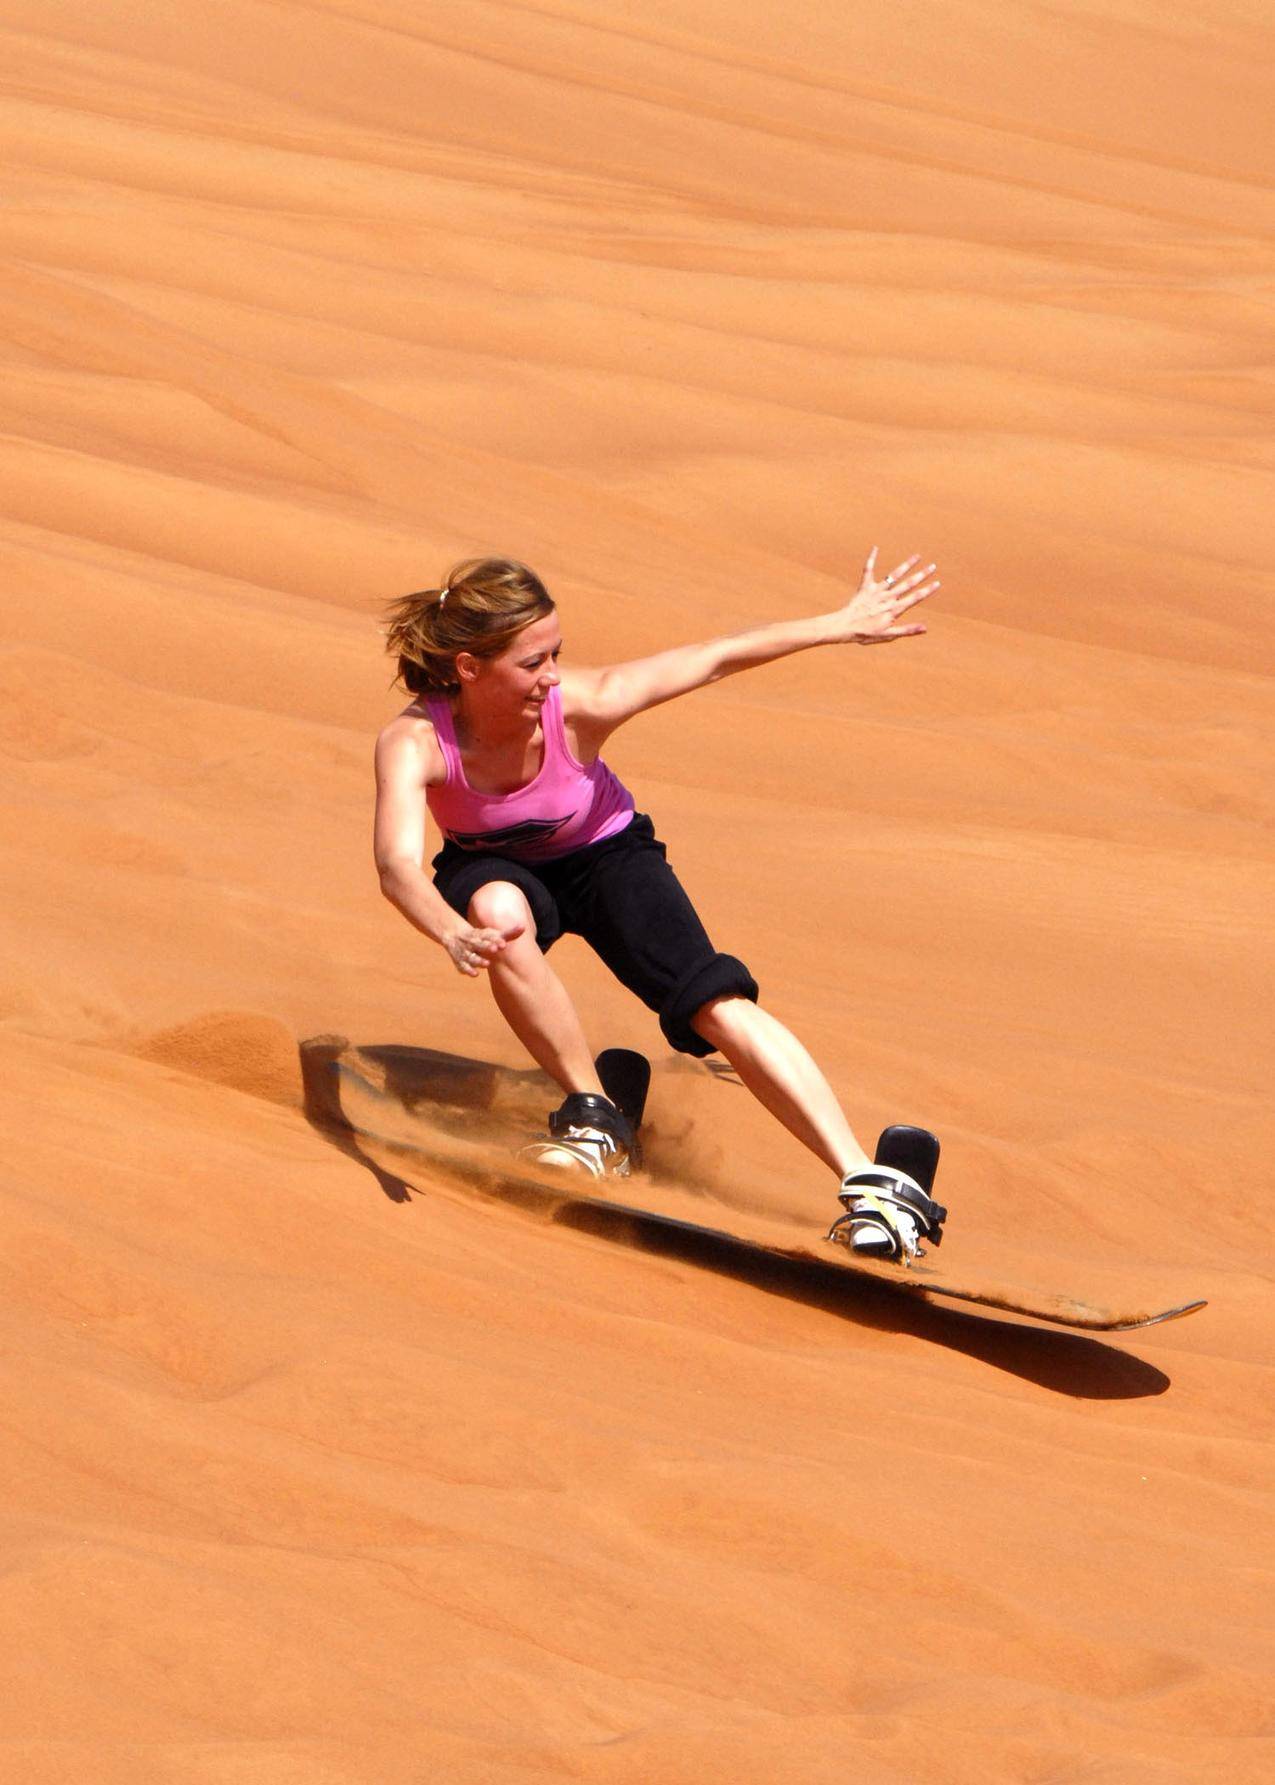 沙漠,滑板,运动女性人物图片